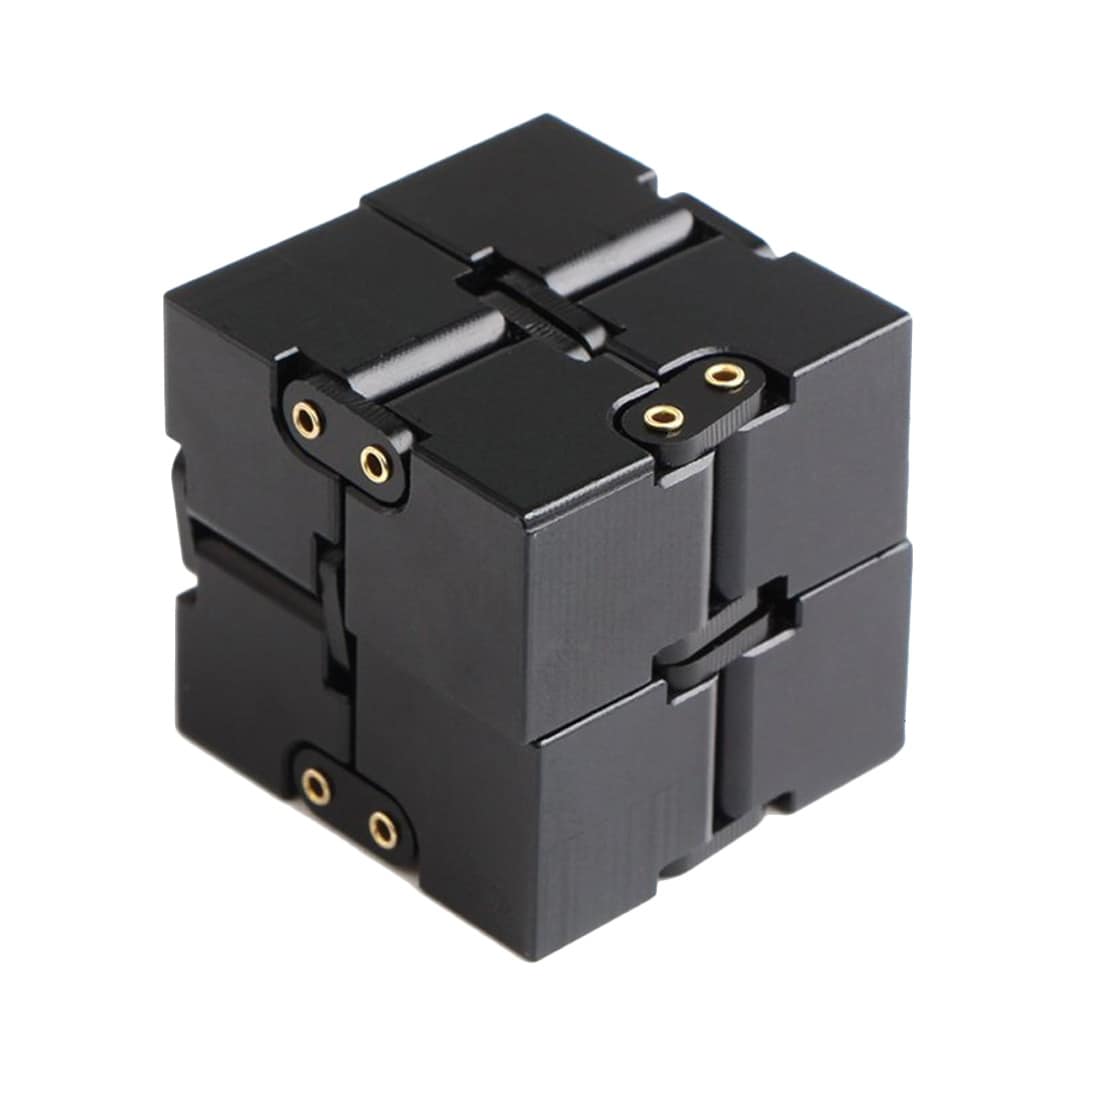 Magic Fidget Cube - Foldepuslespil til Afstressning